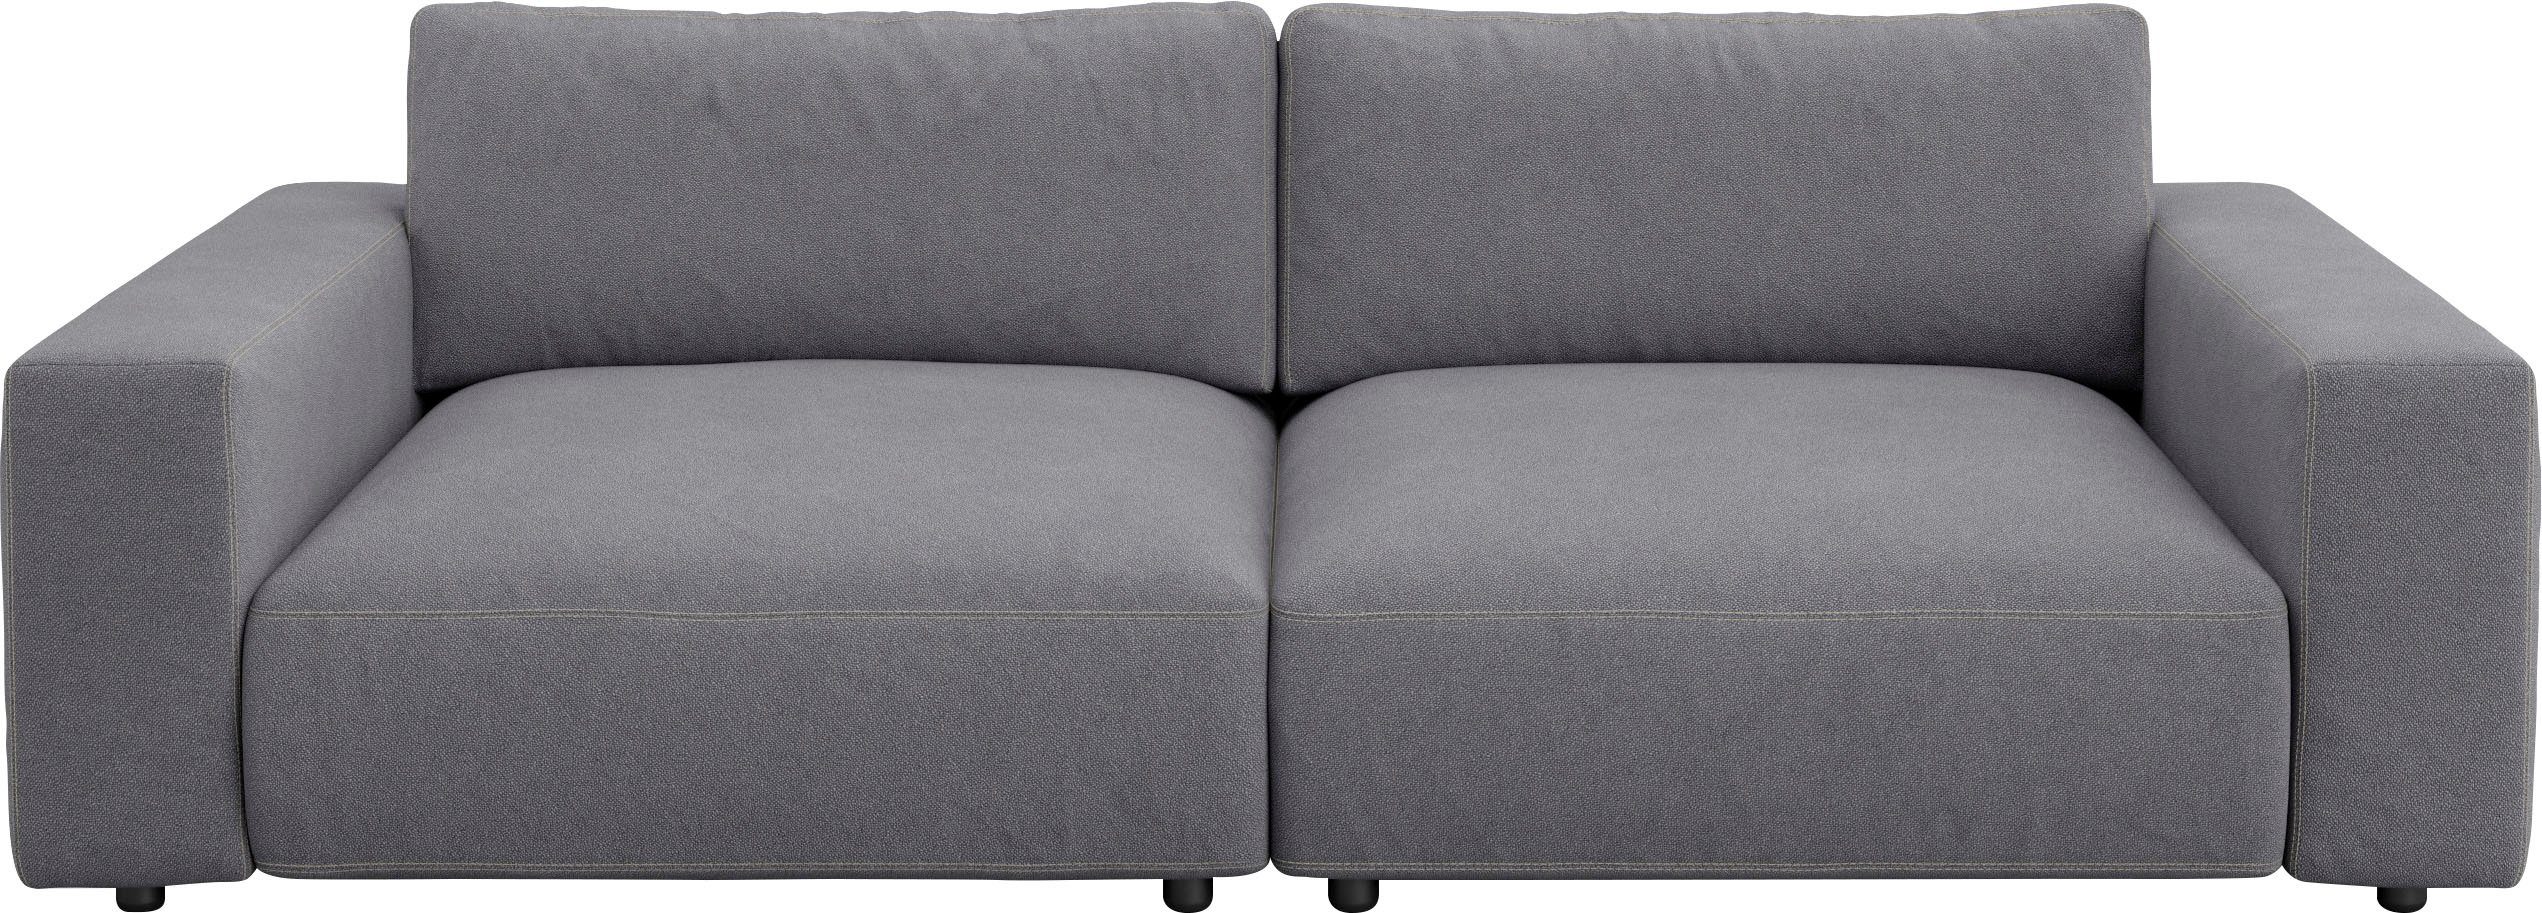 Big-Sofa in unterschiedlichen by 4 M und Nähten, GALLERY 2,5-Sitzer Musterring branded vielen LUCIA, Qualitäten